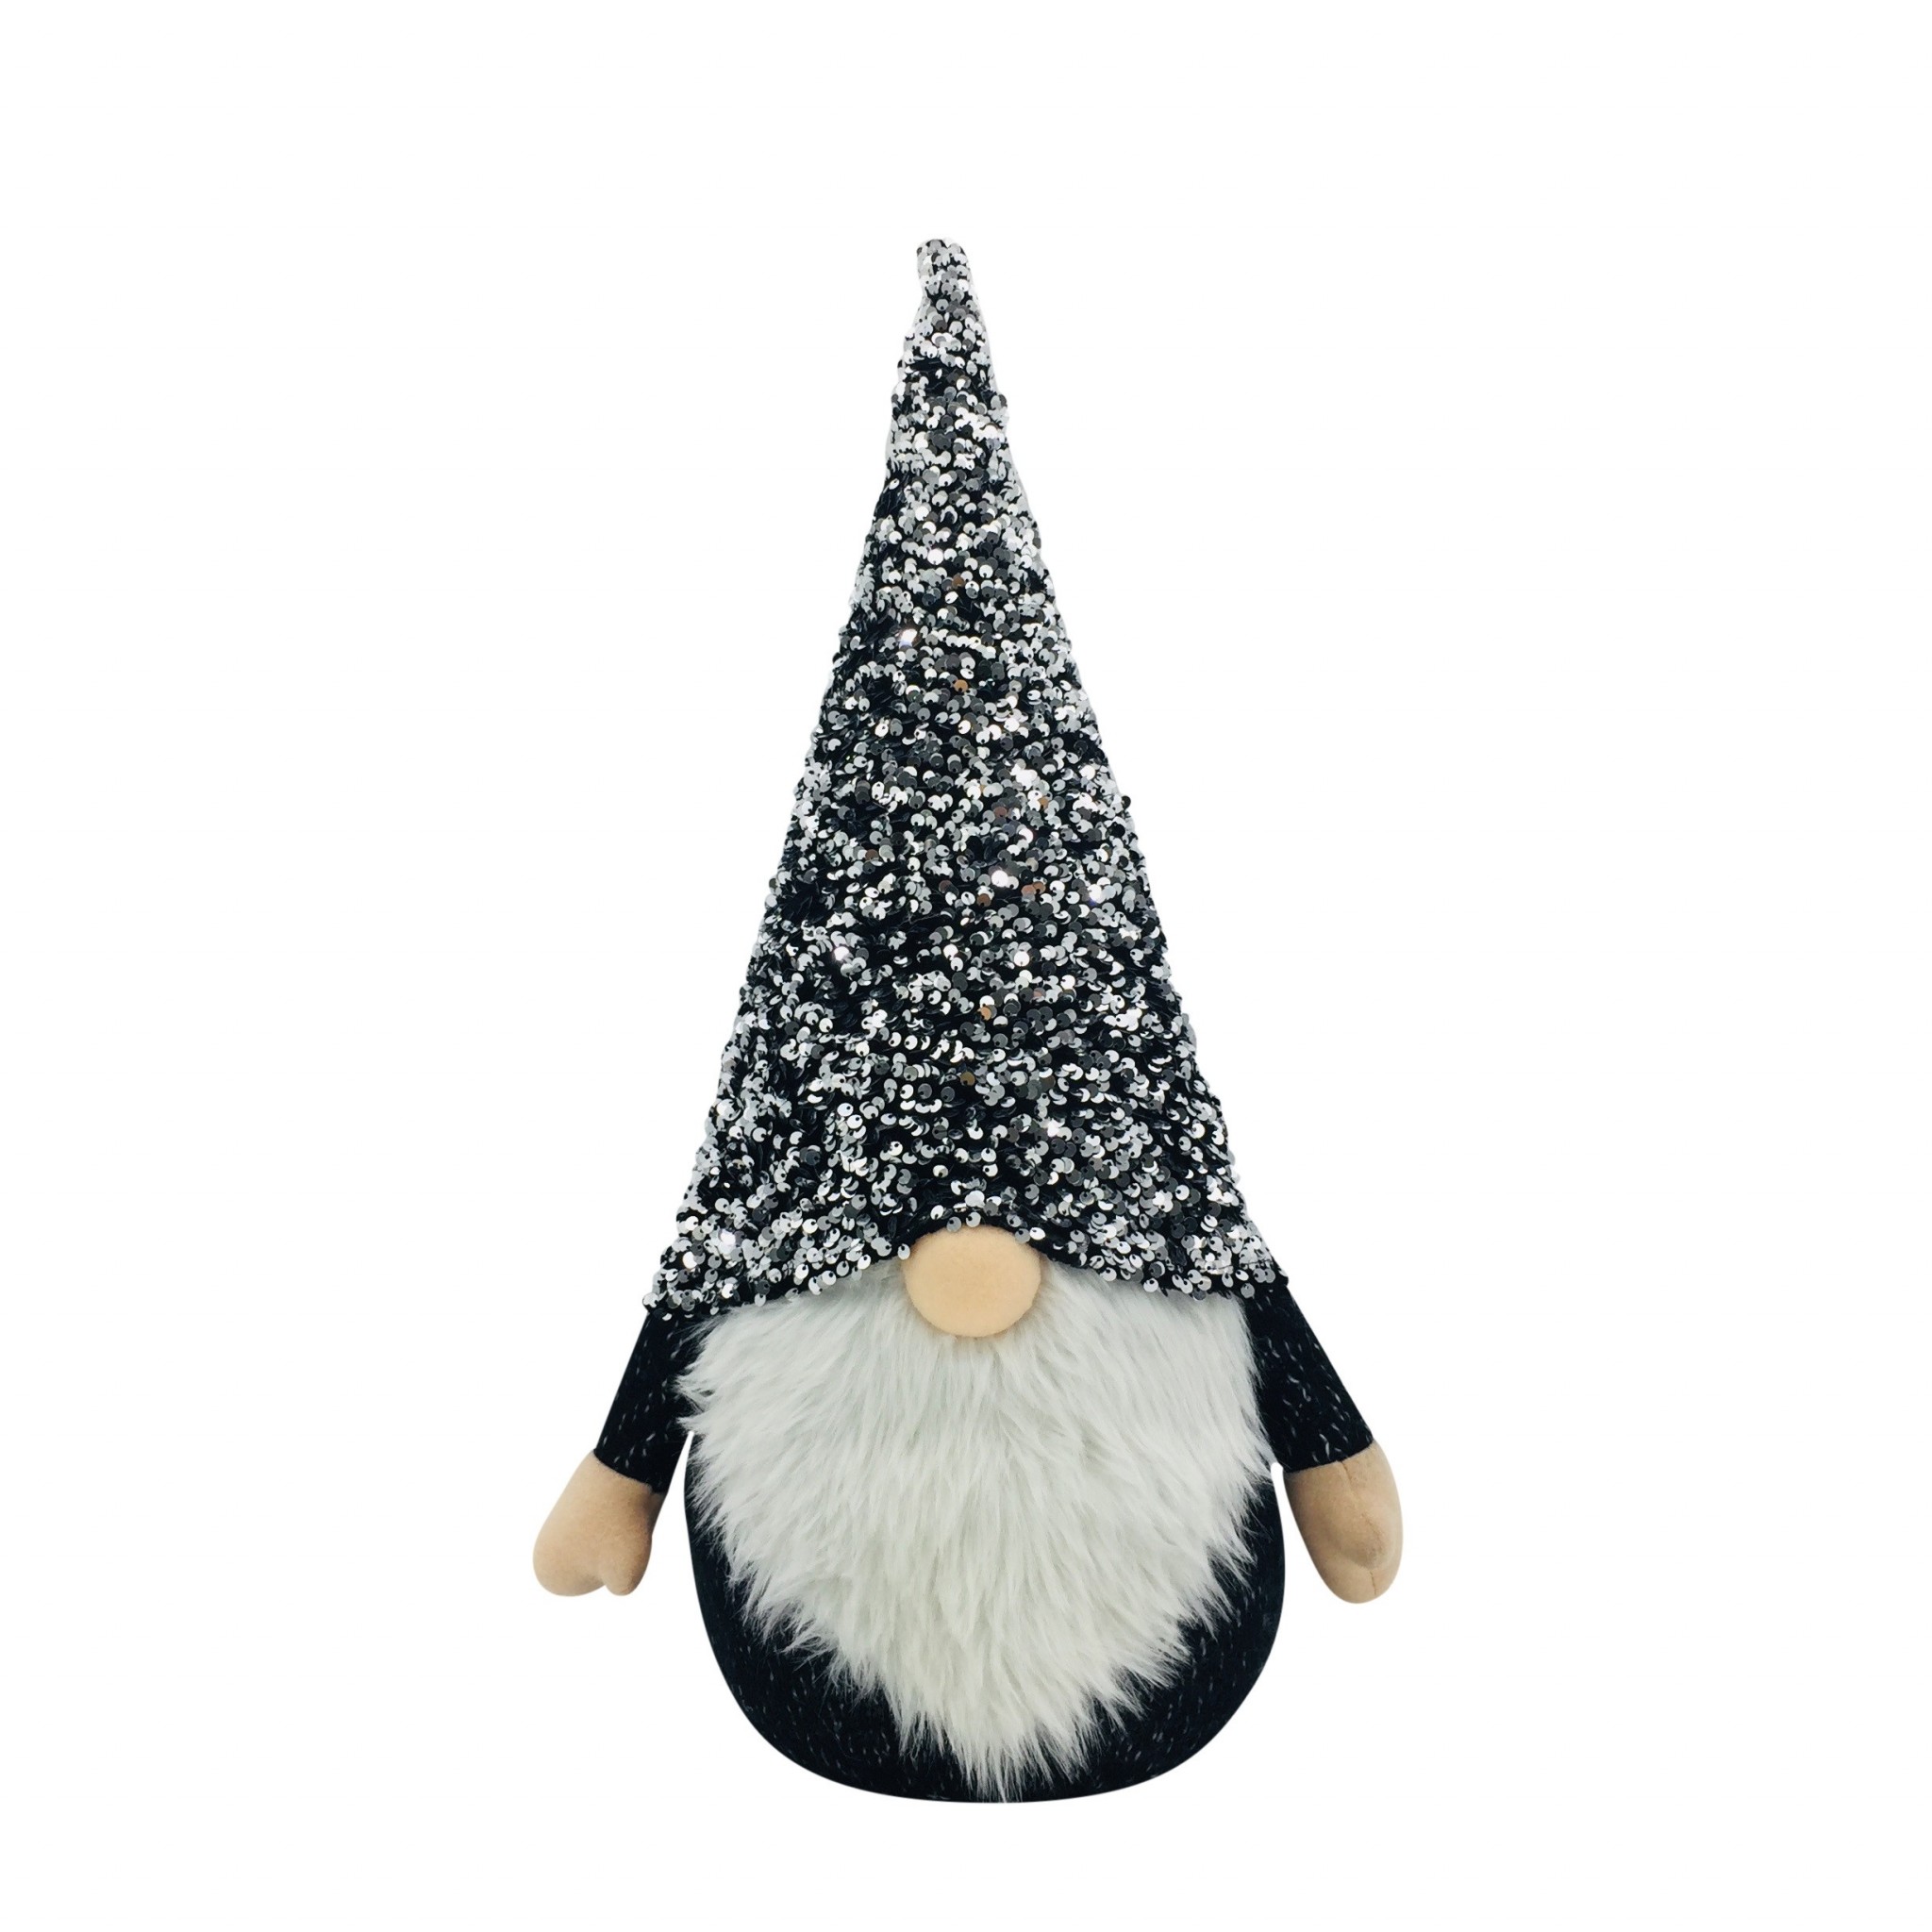 15" Glittery Black and White Sparkle Gnome